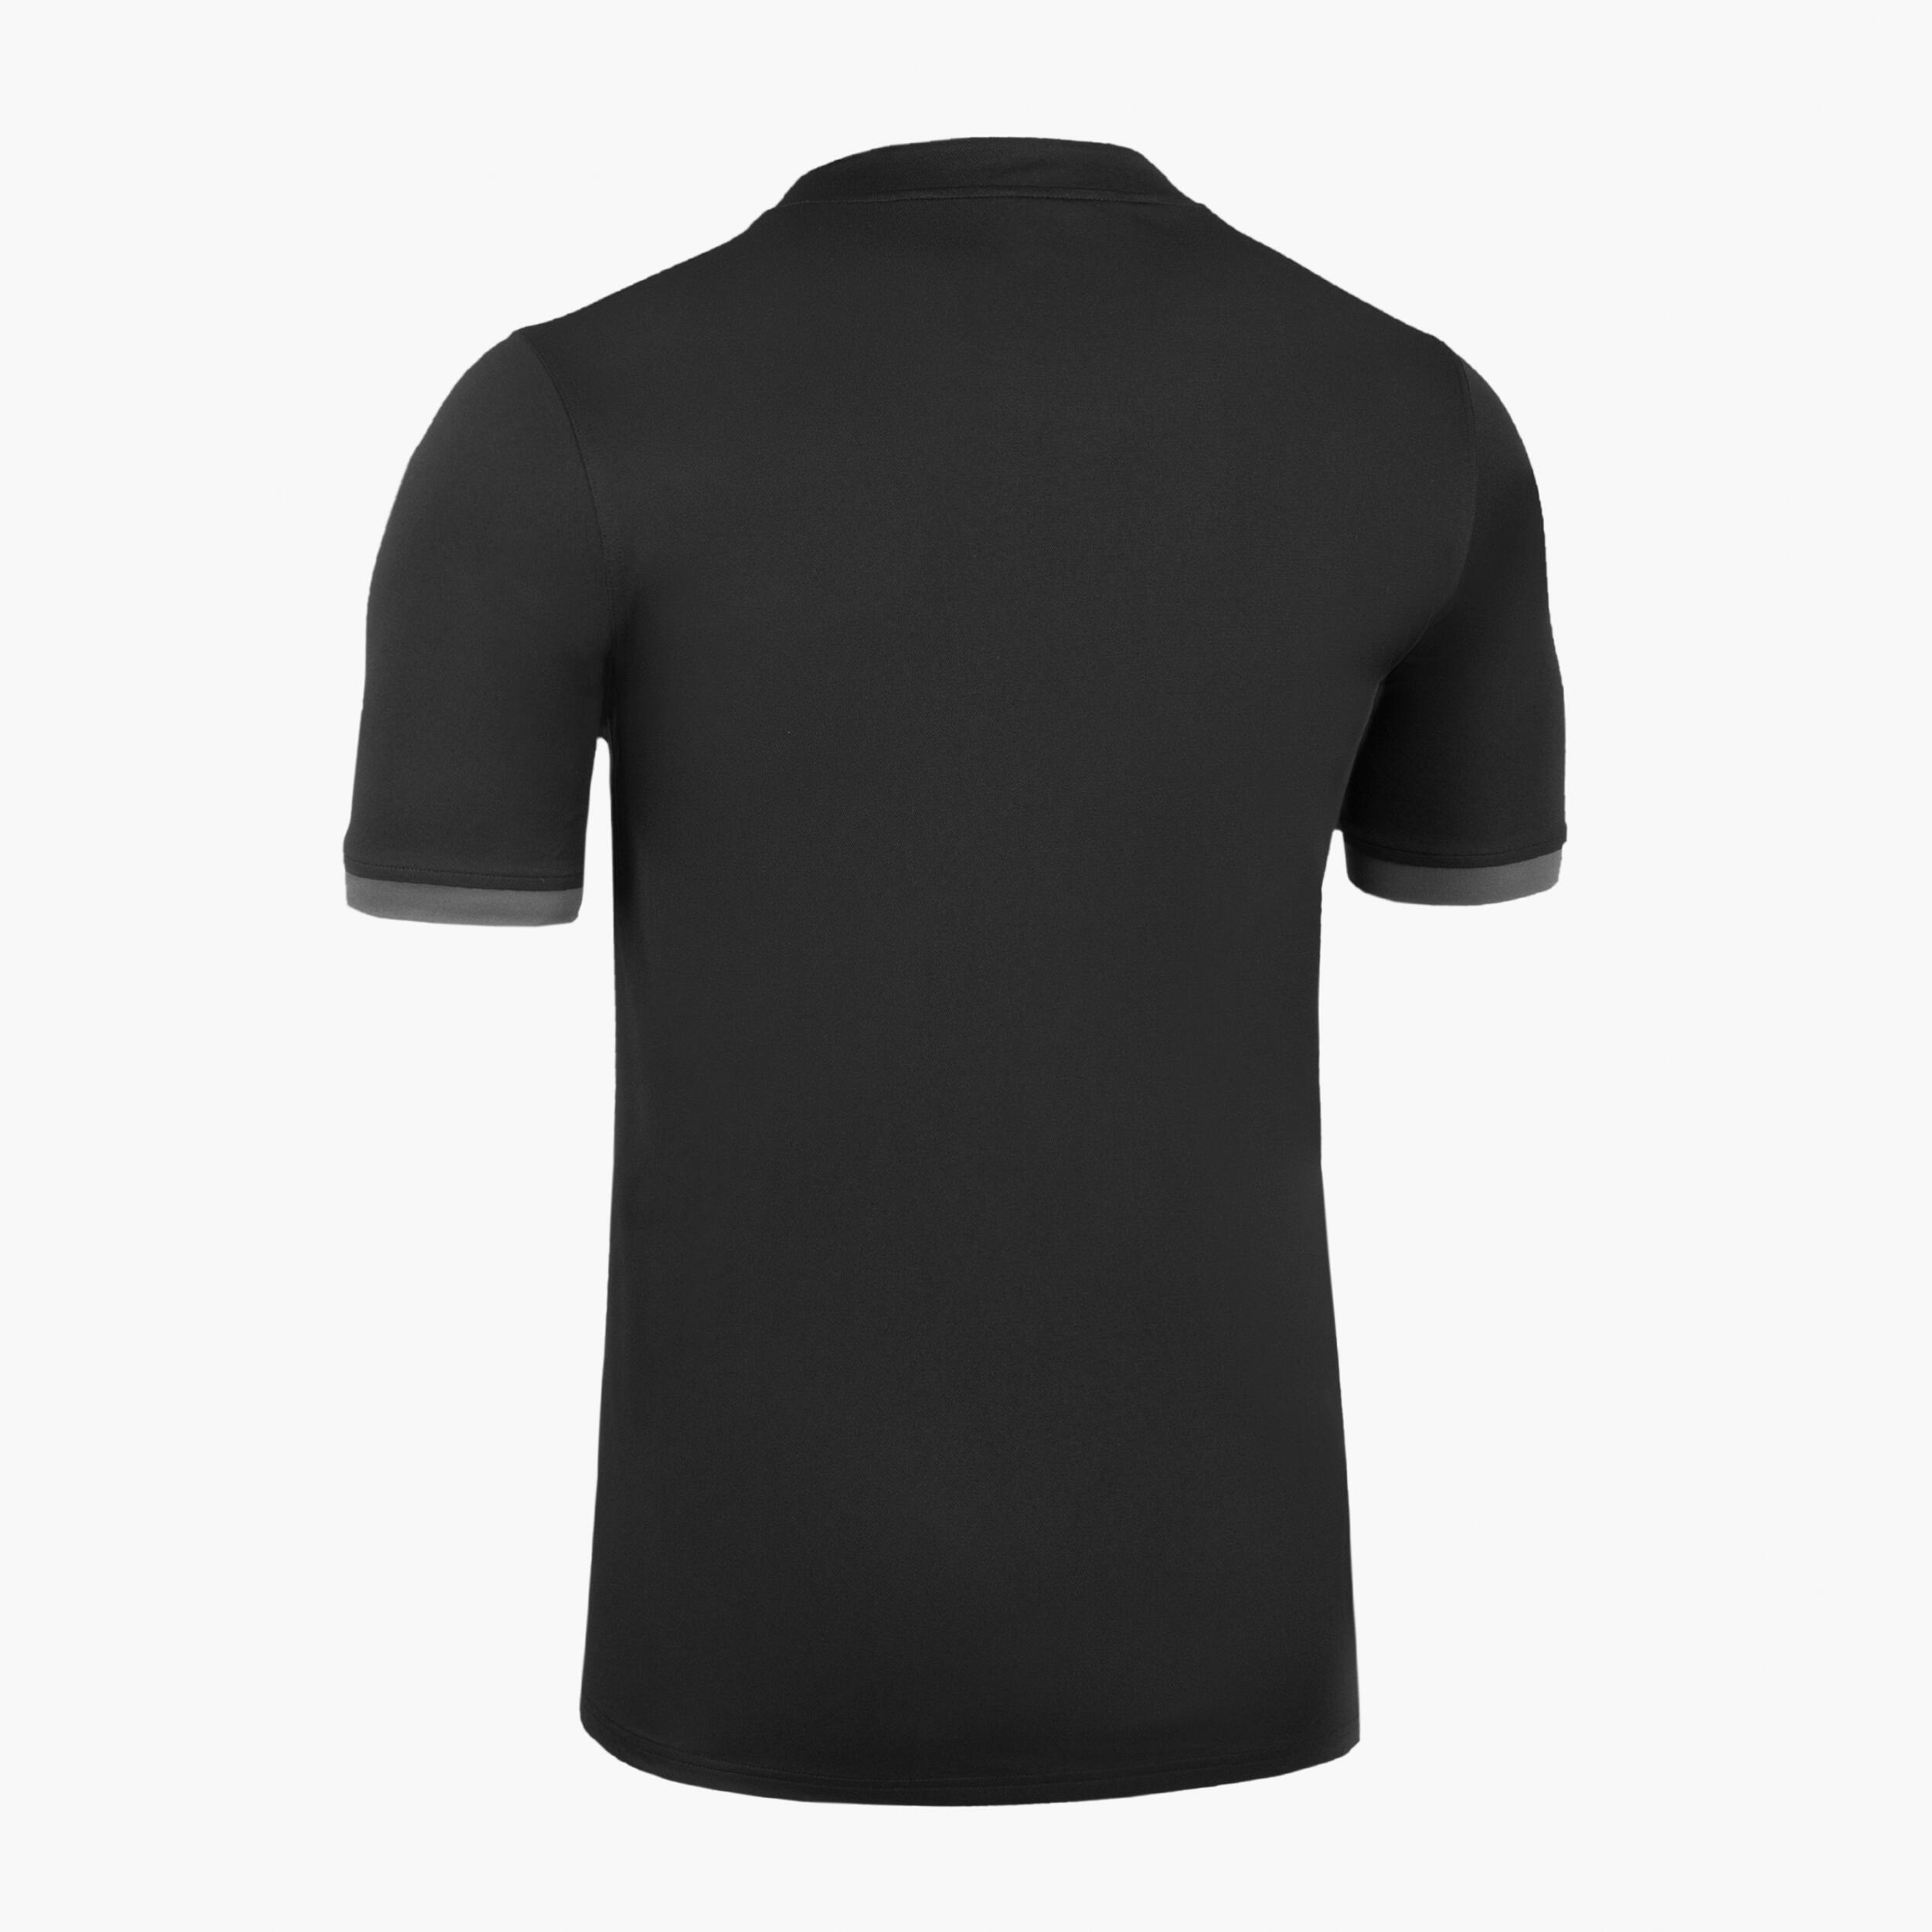 Men's Short-Sleeved Rugby Shirt R100 - Black/Grey 2/5